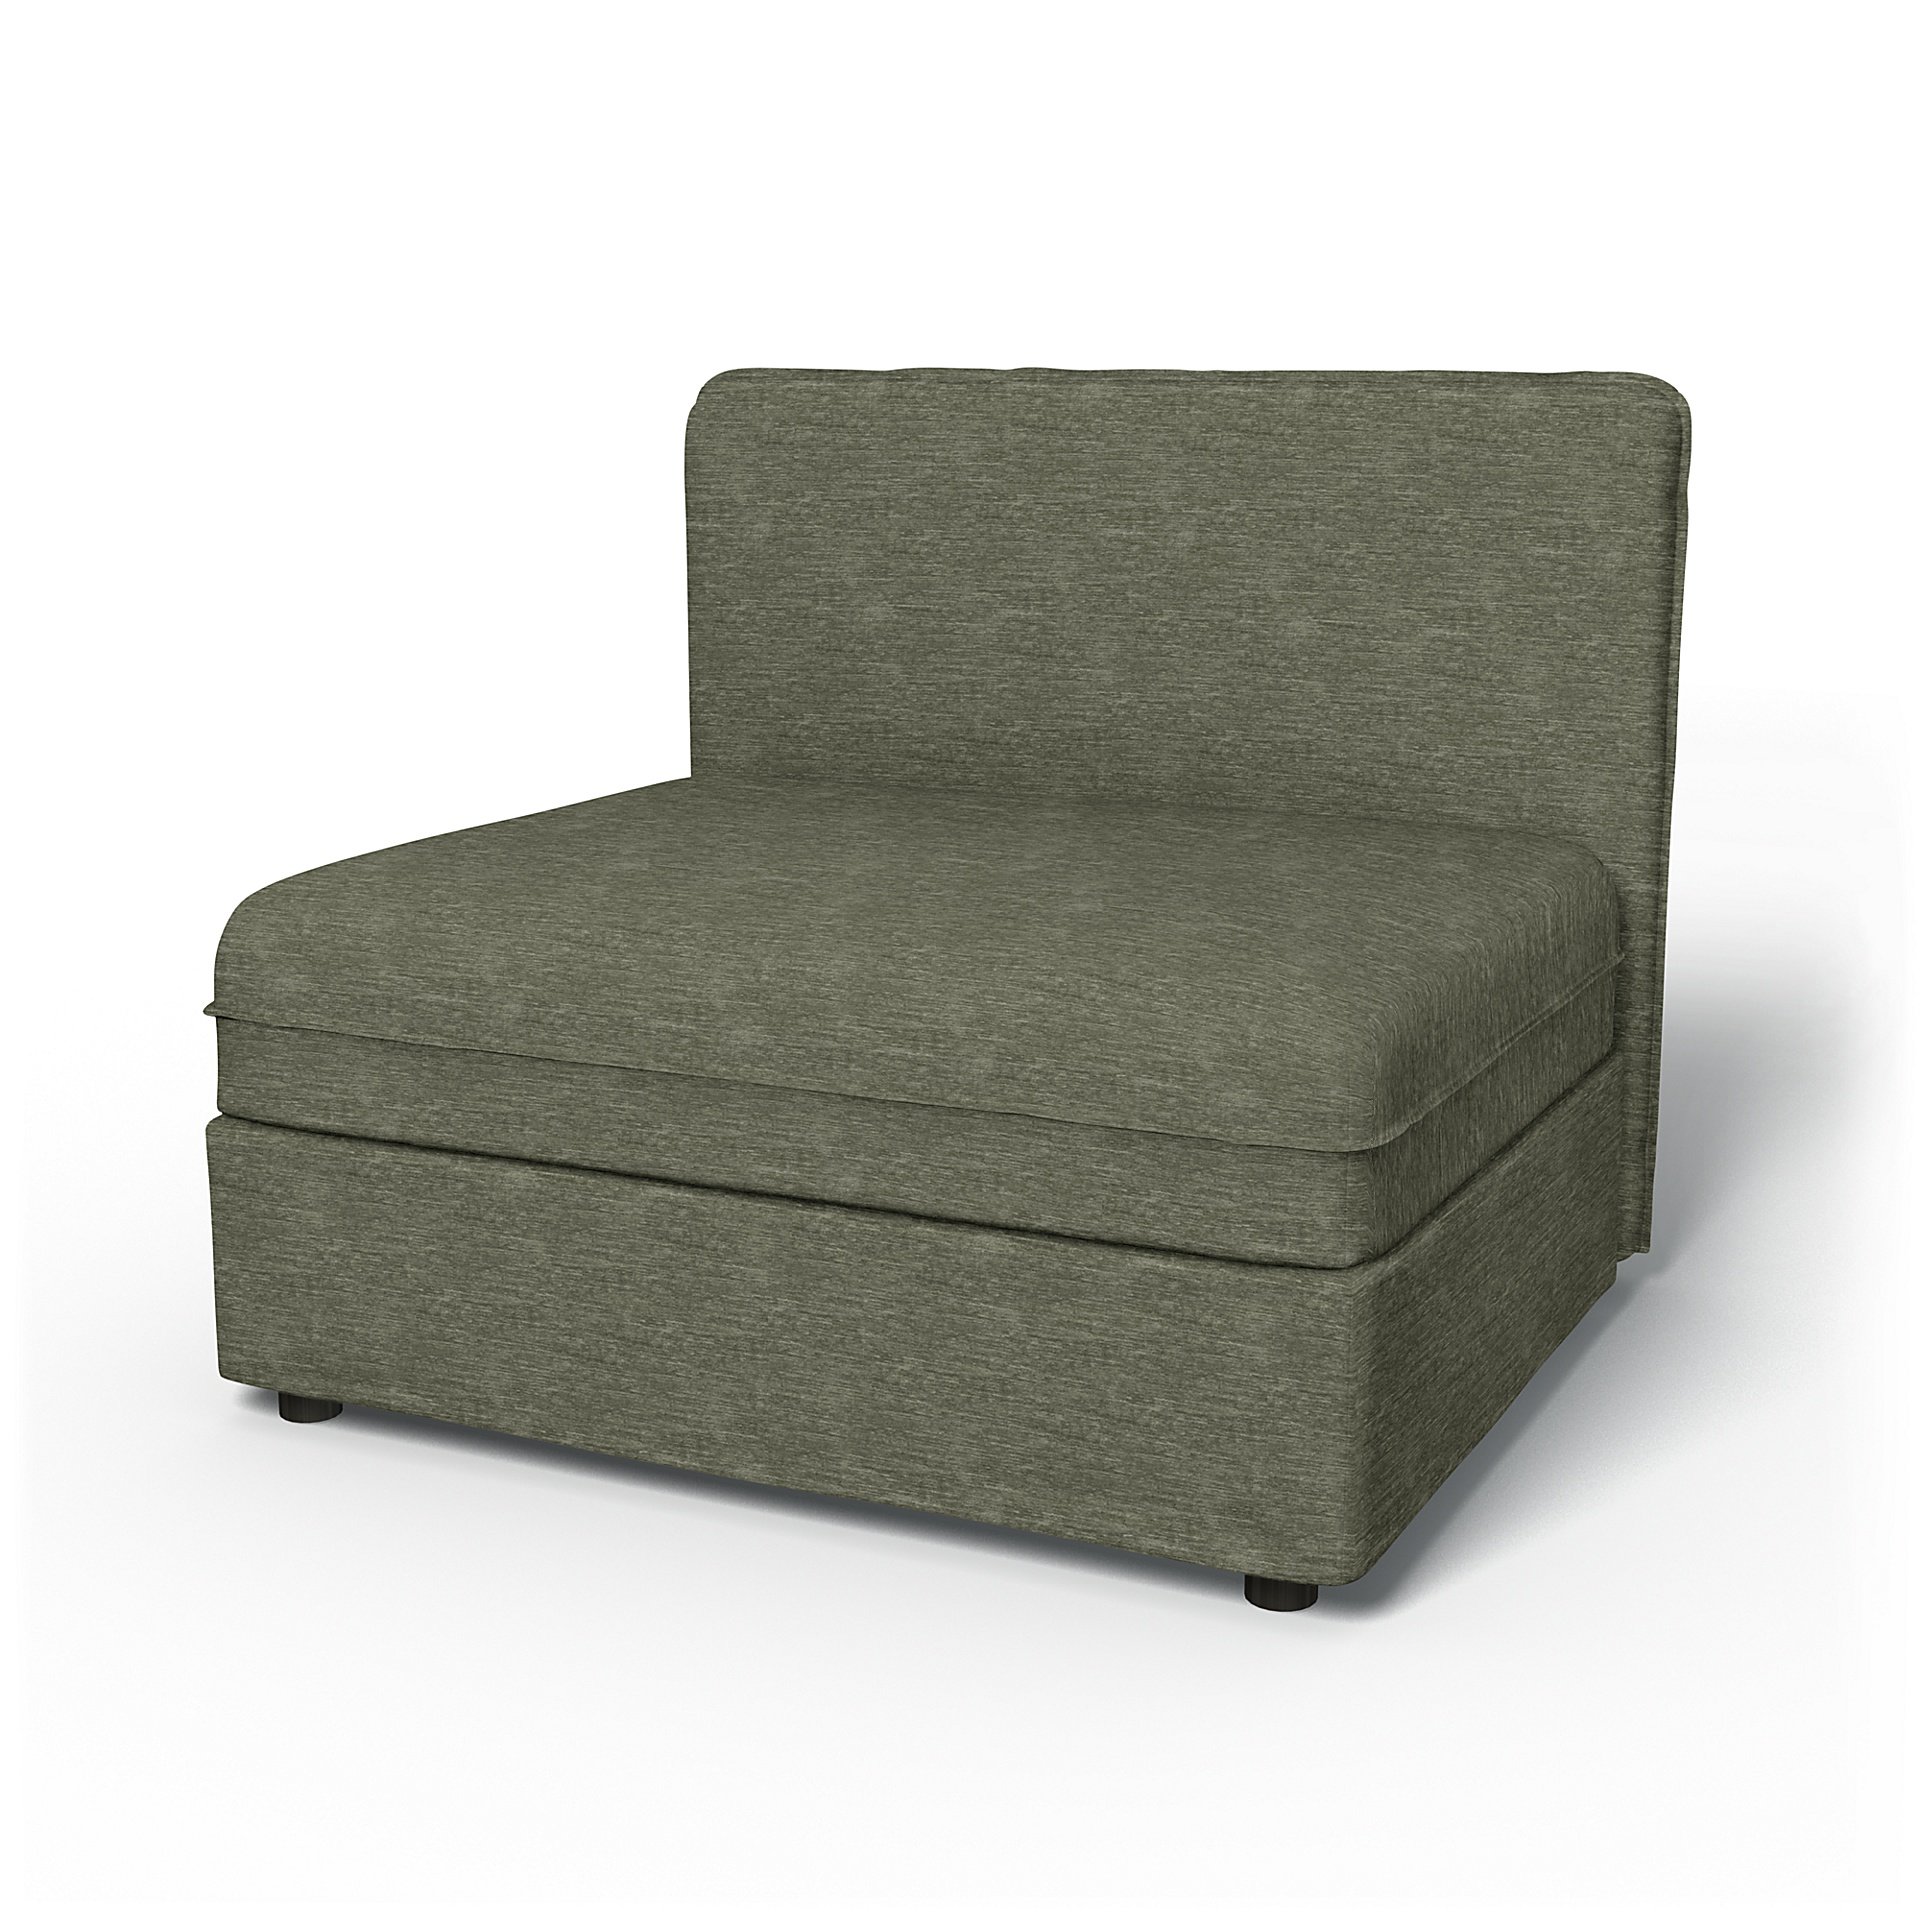 IKEA - Vallentuna Seat Module with Low Back Cover 100x80cm 39x32in, Green Grey, Velvet - Bemz